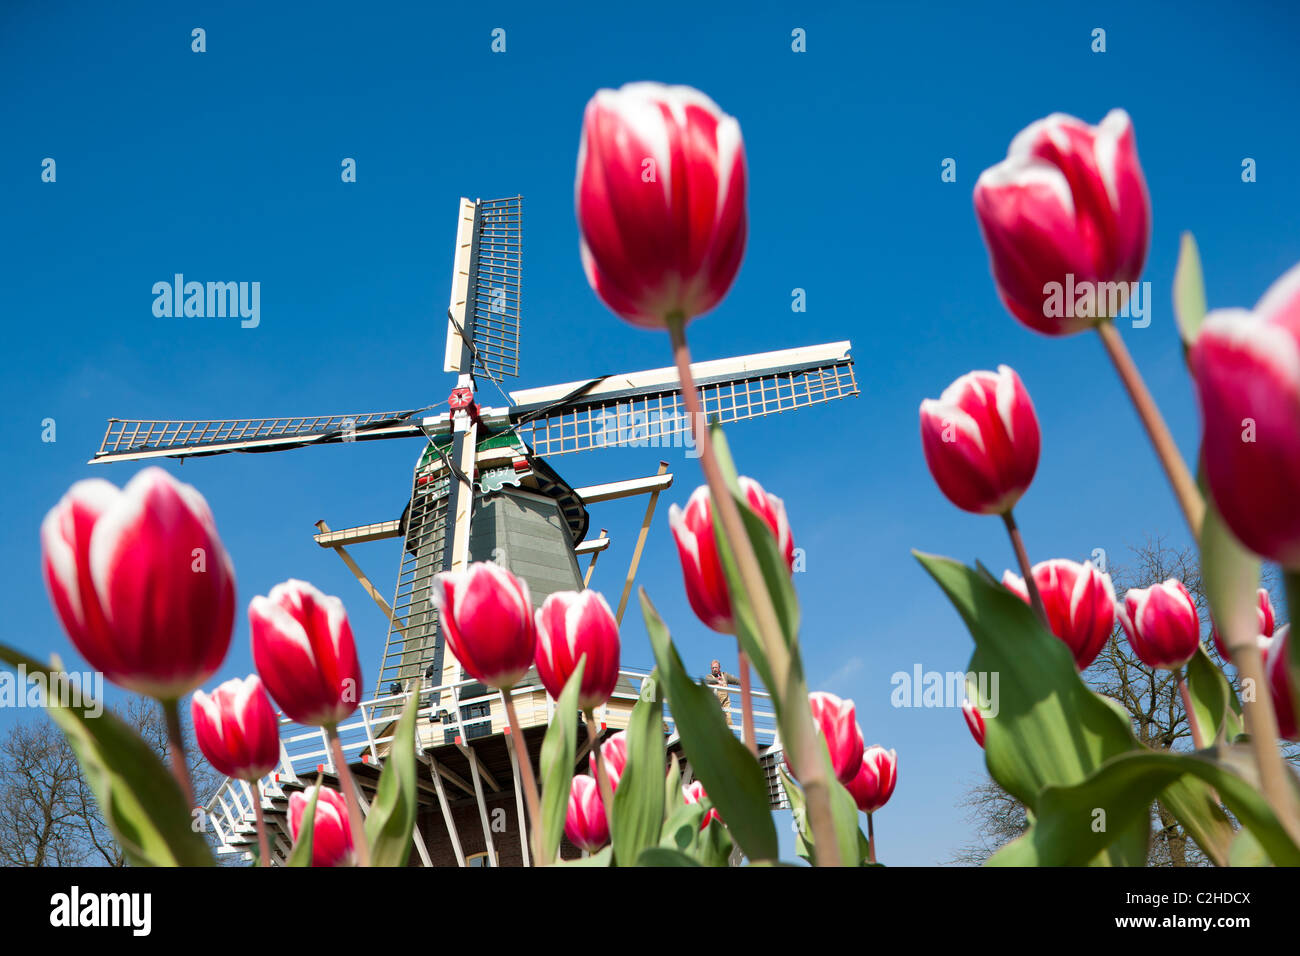 Keukenhof Gardens. Holländische Windmühle mit Miller und großen roten und weißen Tulpen im Keukenhof Tulpe Blume Gärten in Wassenaar, Holland, Niederlande Stockfoto